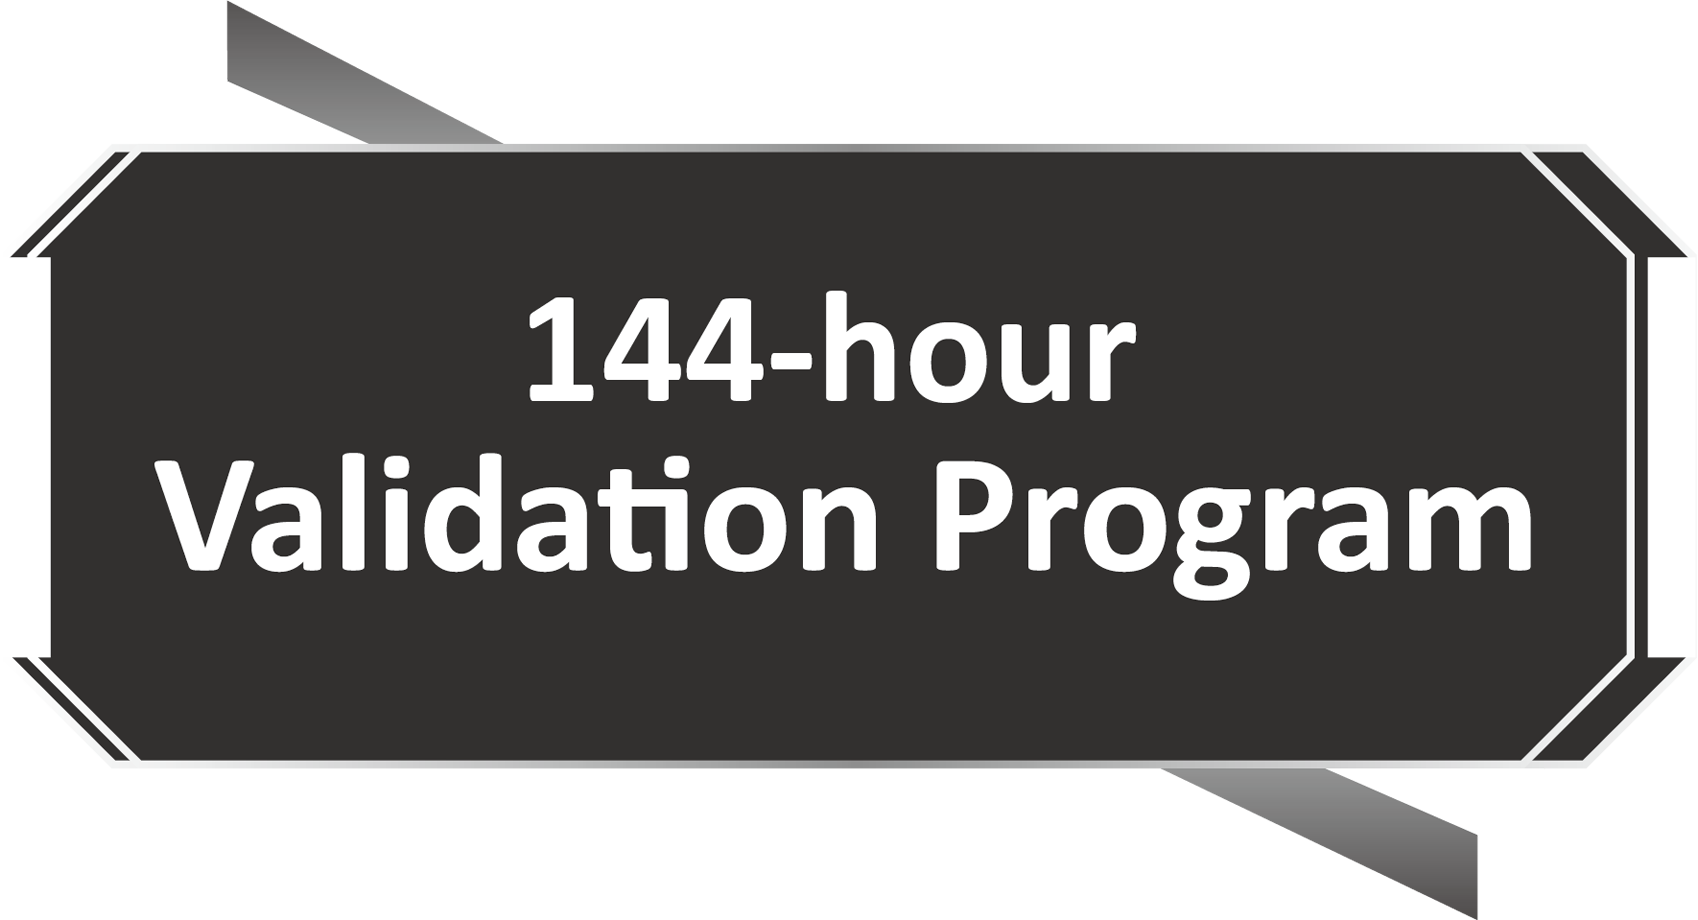 Programme de validation en 144 heures logo